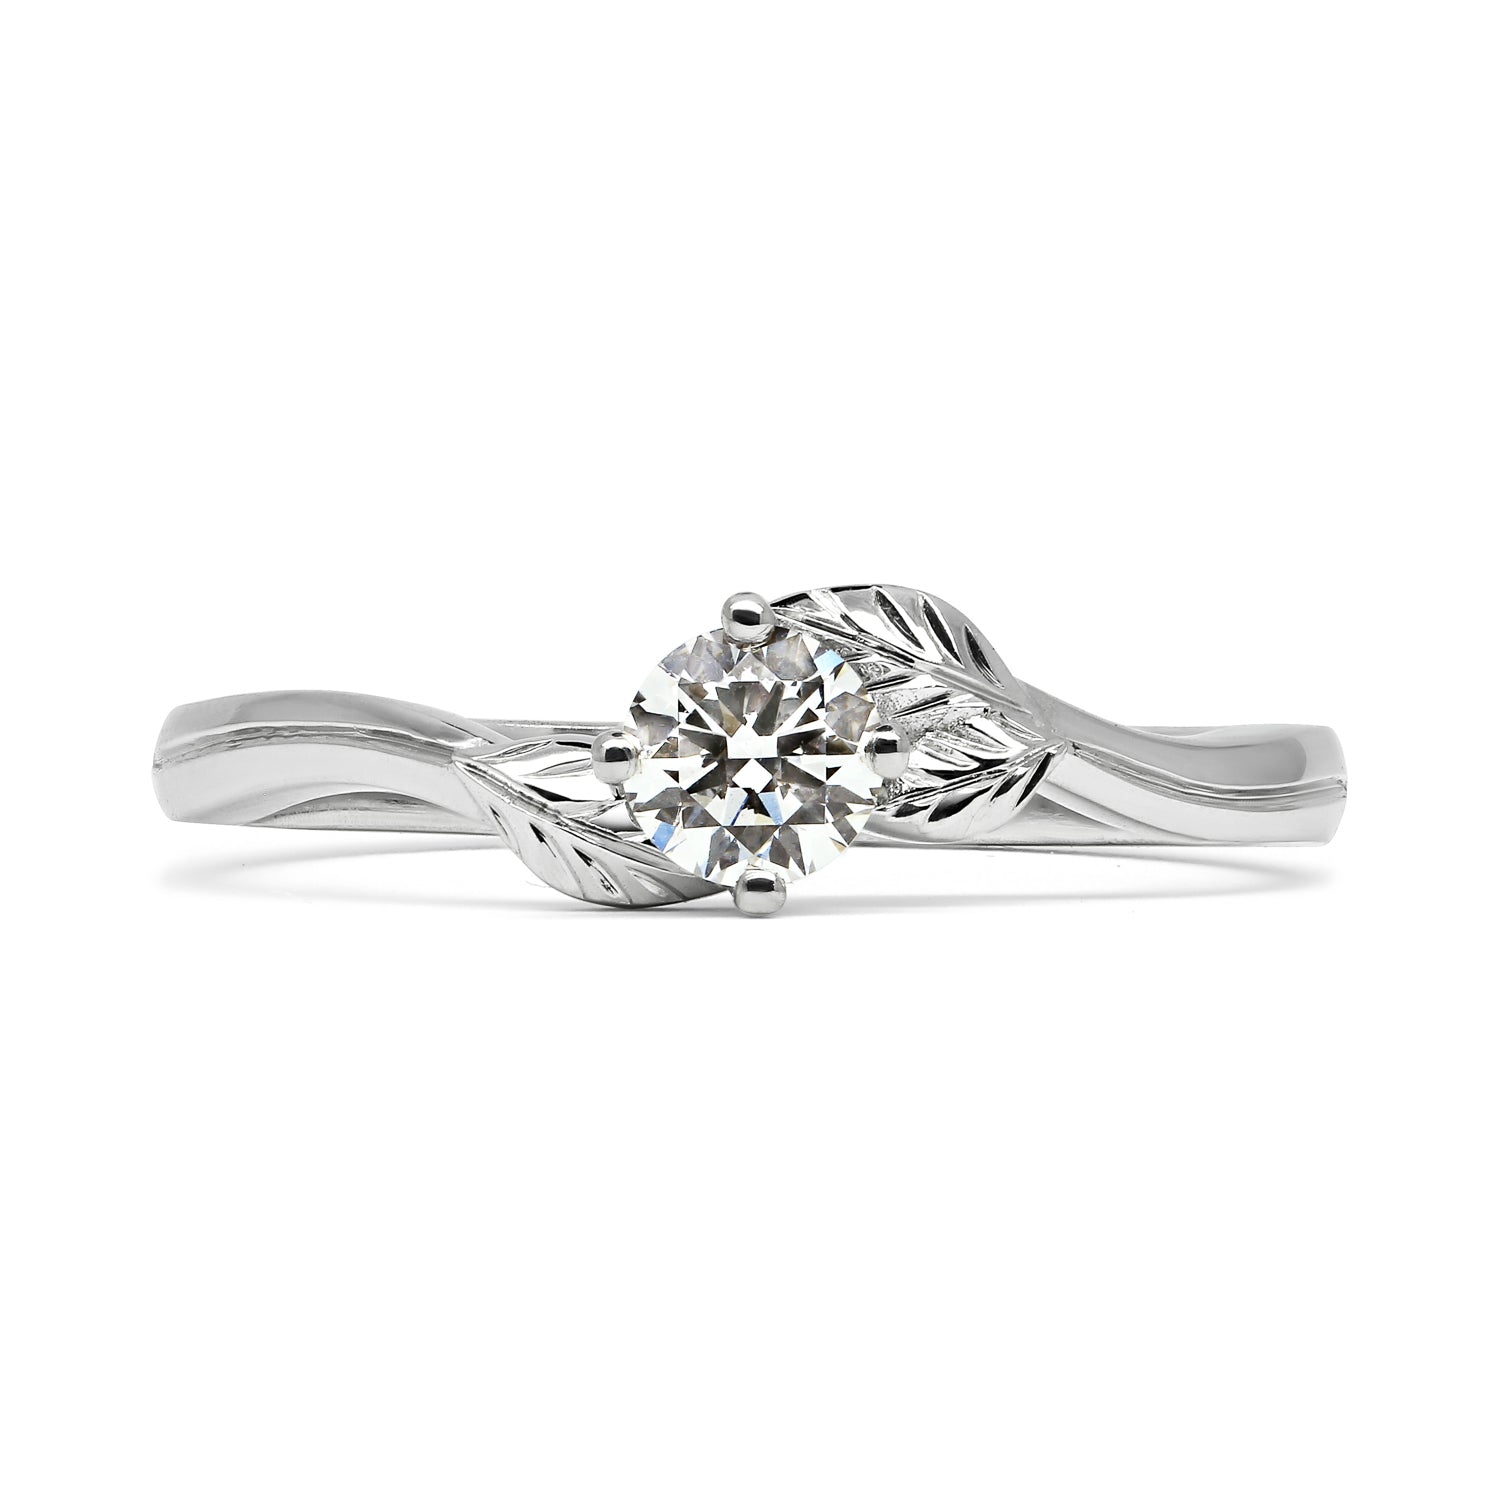 Bespoke Nature Inspired Diamond Engagement Ring